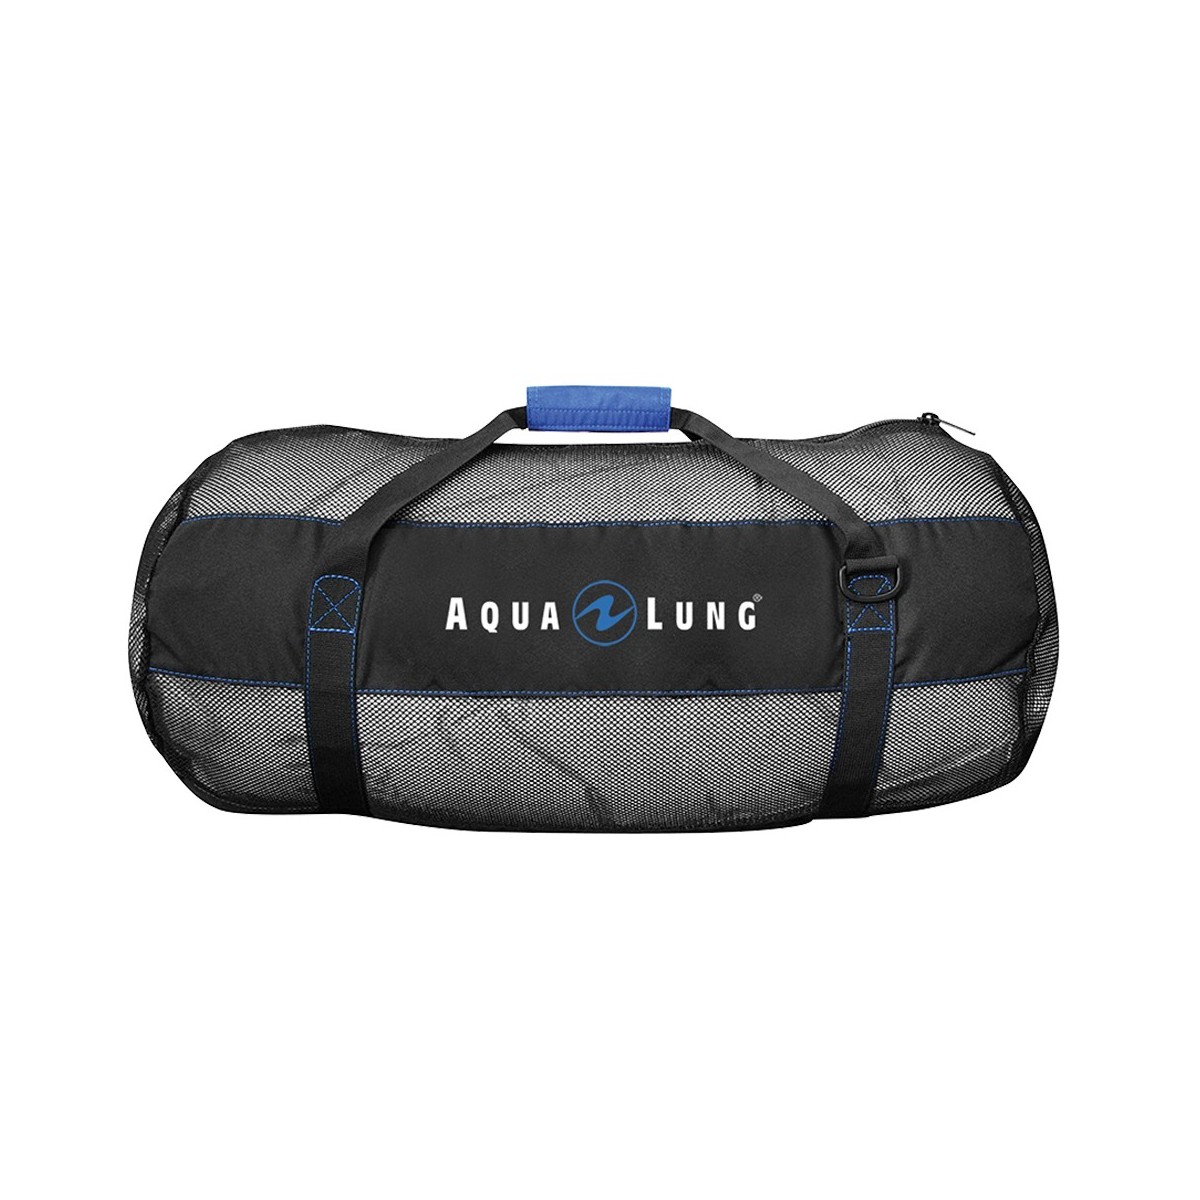 Aqua lung Arrival Mesh Bag